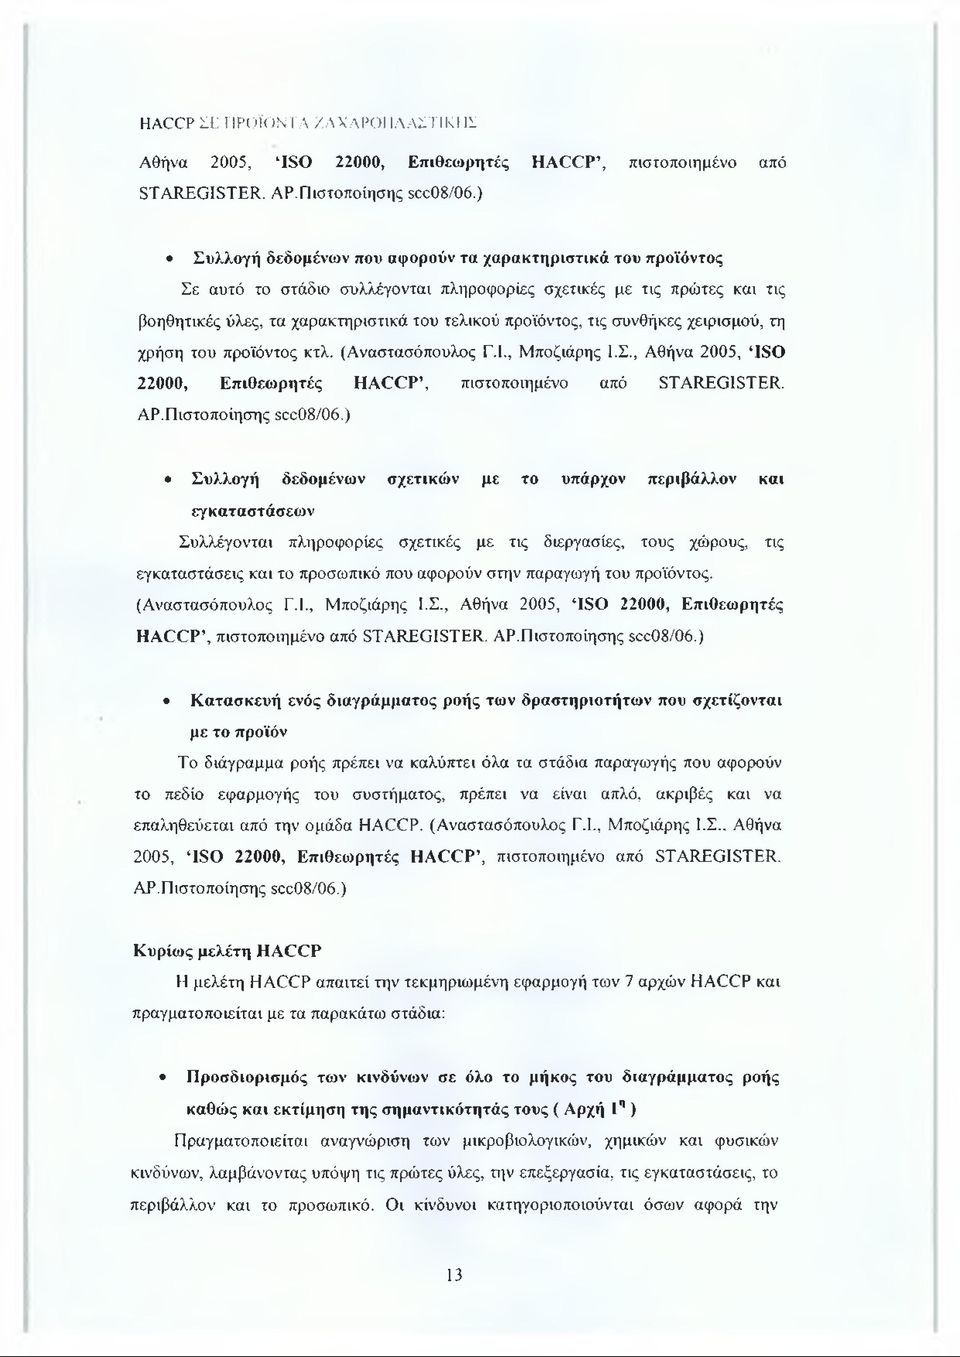 συνθήκες χειρισμού, τη χρήση του προϊόντος κτλ. (Αναστασόπουλος Γ.Ι., Μποζιάρης Ι.Σ., Αθήνα 2005, ISO 22000, Επιθεωρητές HACCP, πιστοποιημένο από STAREGISTER. ΑΡ.Πιστοποίησης scc08/06.